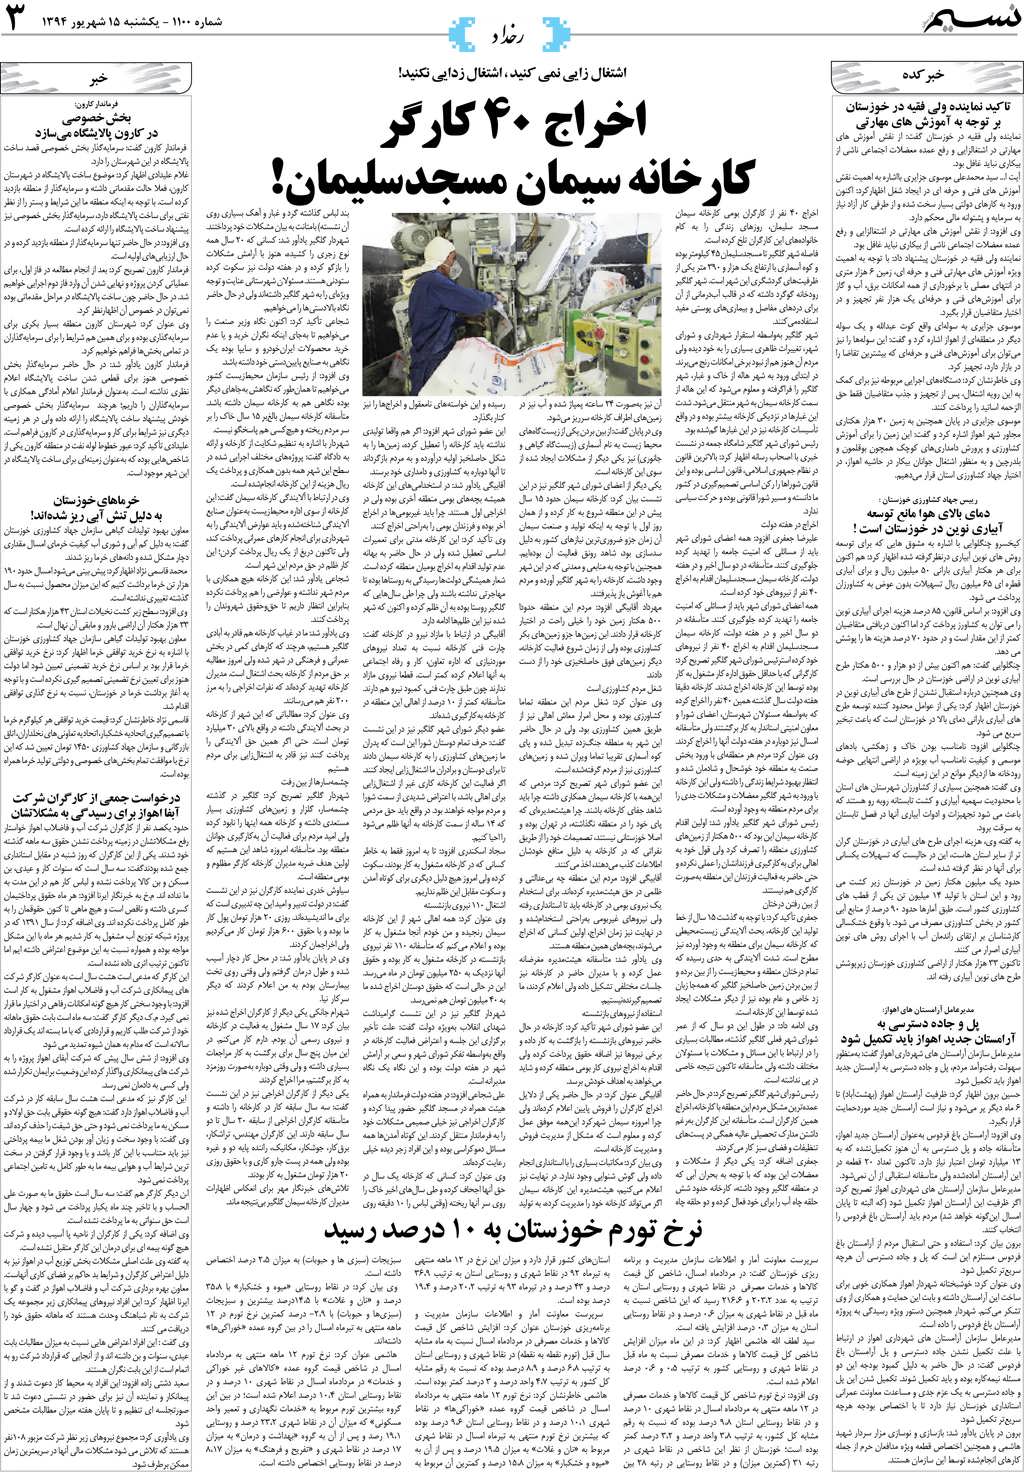 صفحه رخداد روزنامه نسیم شماره 1100